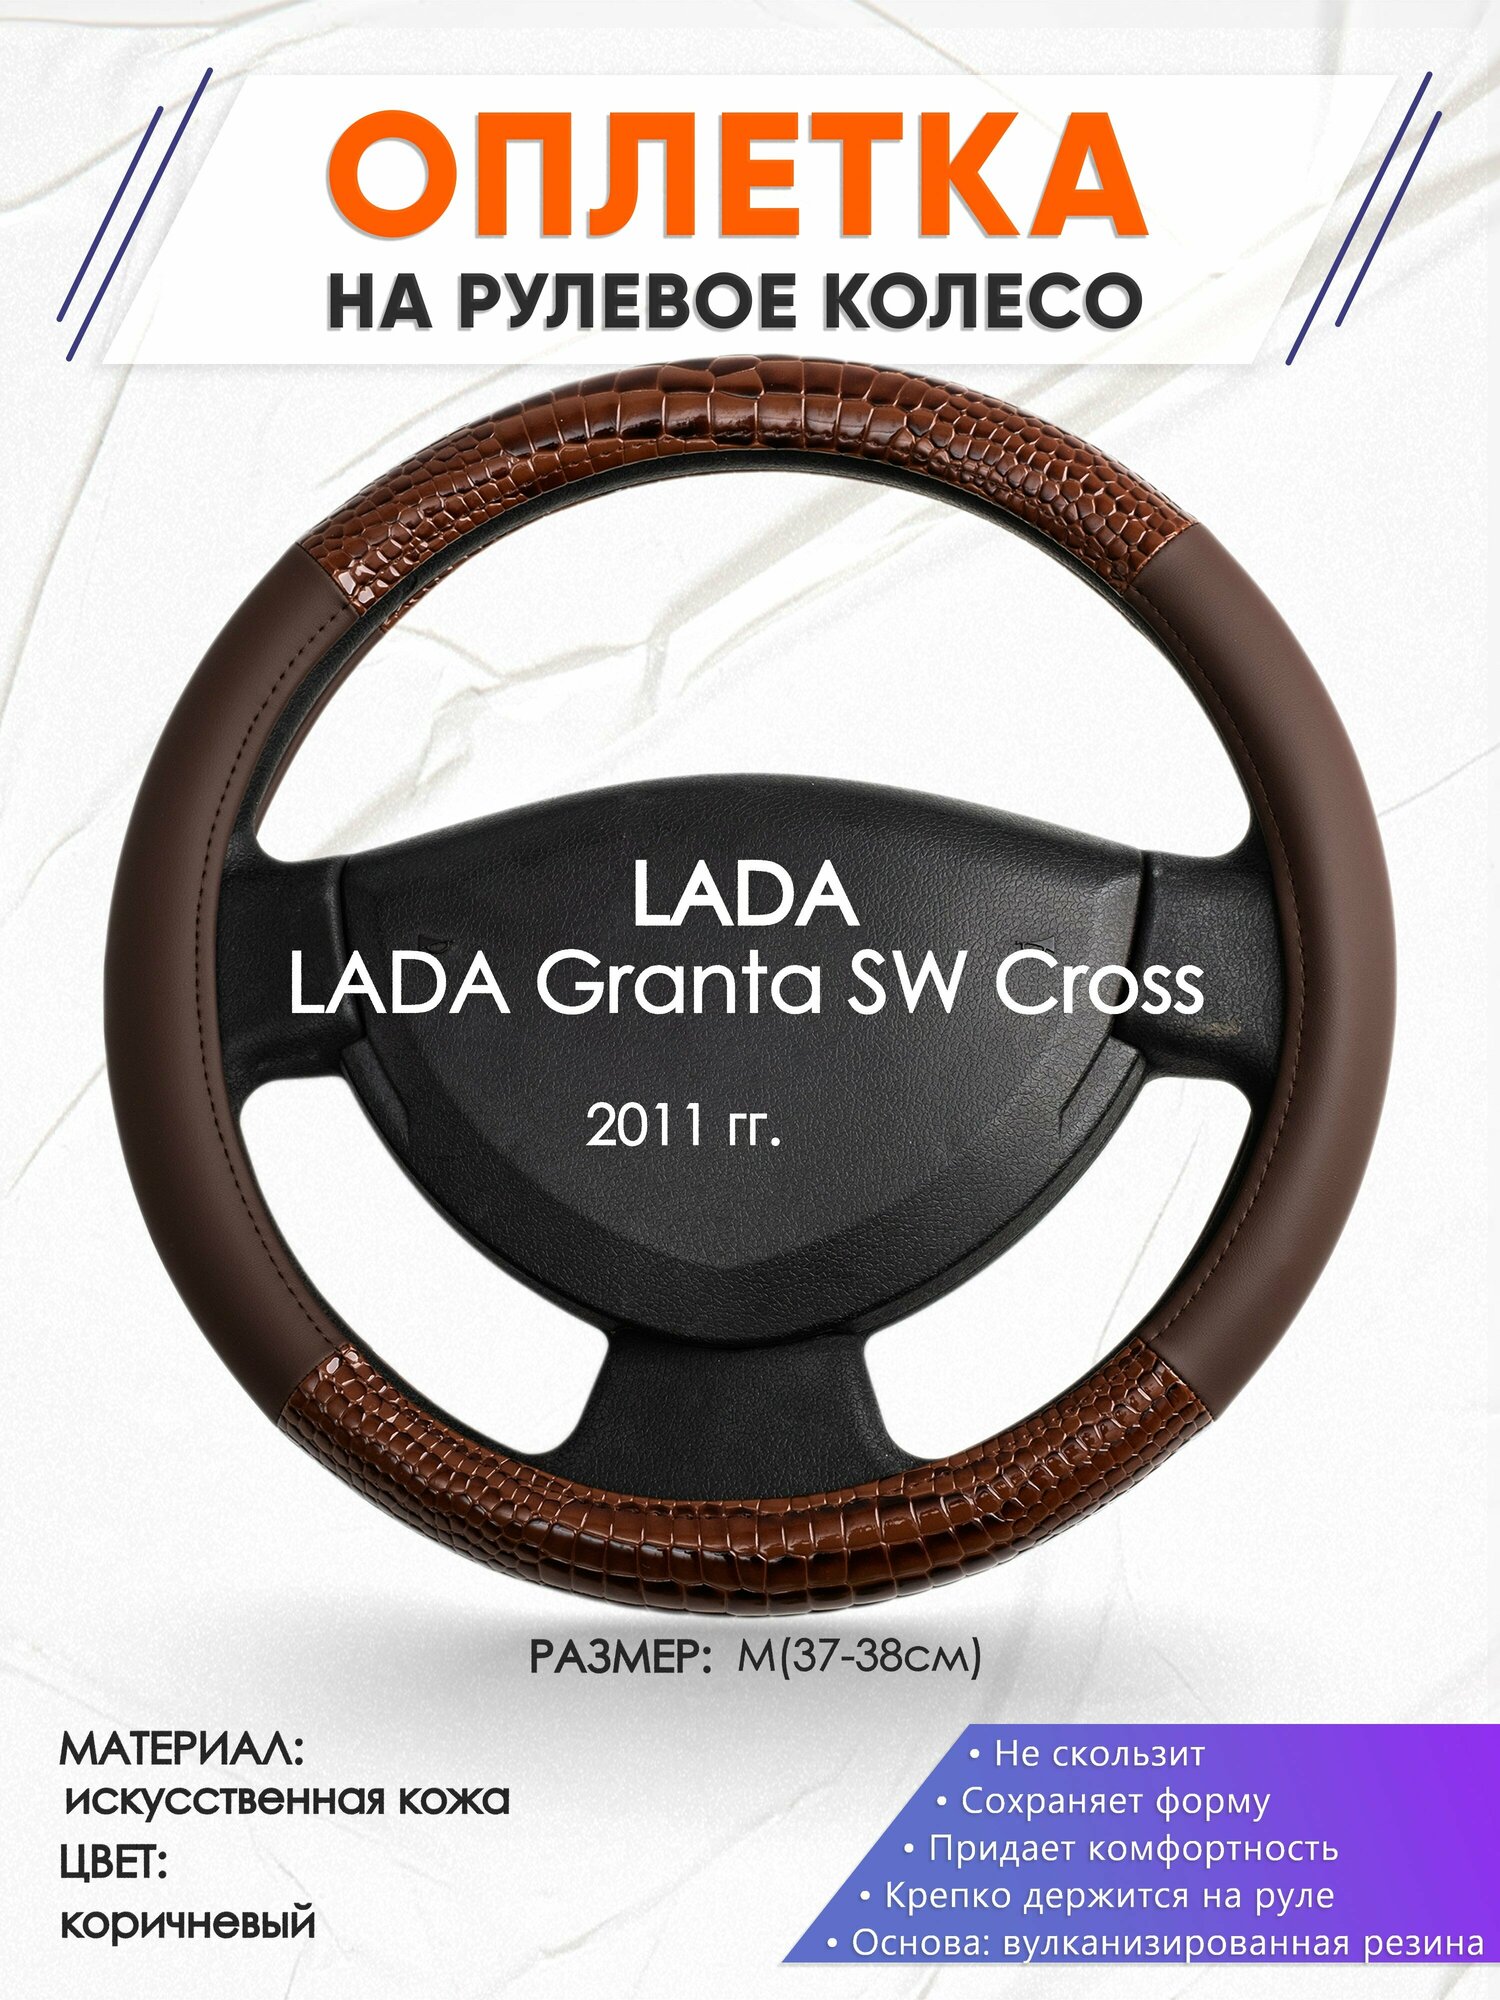 Оплетка наруль для LADA Granta SW Cross(Лада Гранта св кросс) 2011 годов выпуска, размер M(37-38см), Искусственная кожа 85